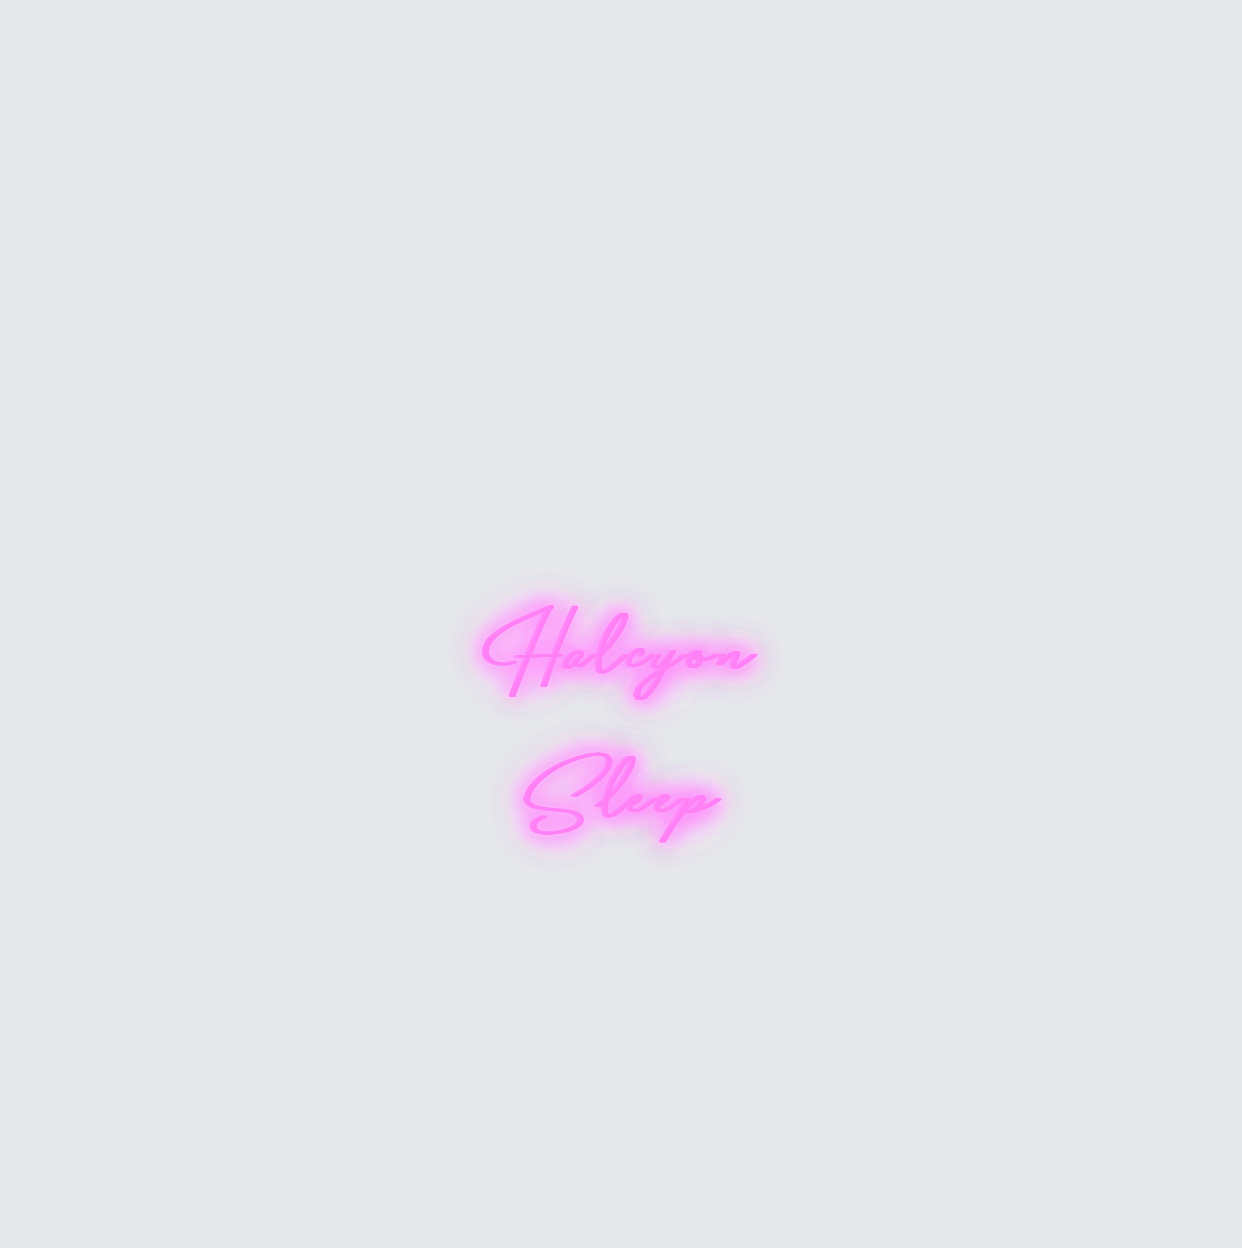 Custom neon sign - Halcyon Sleep